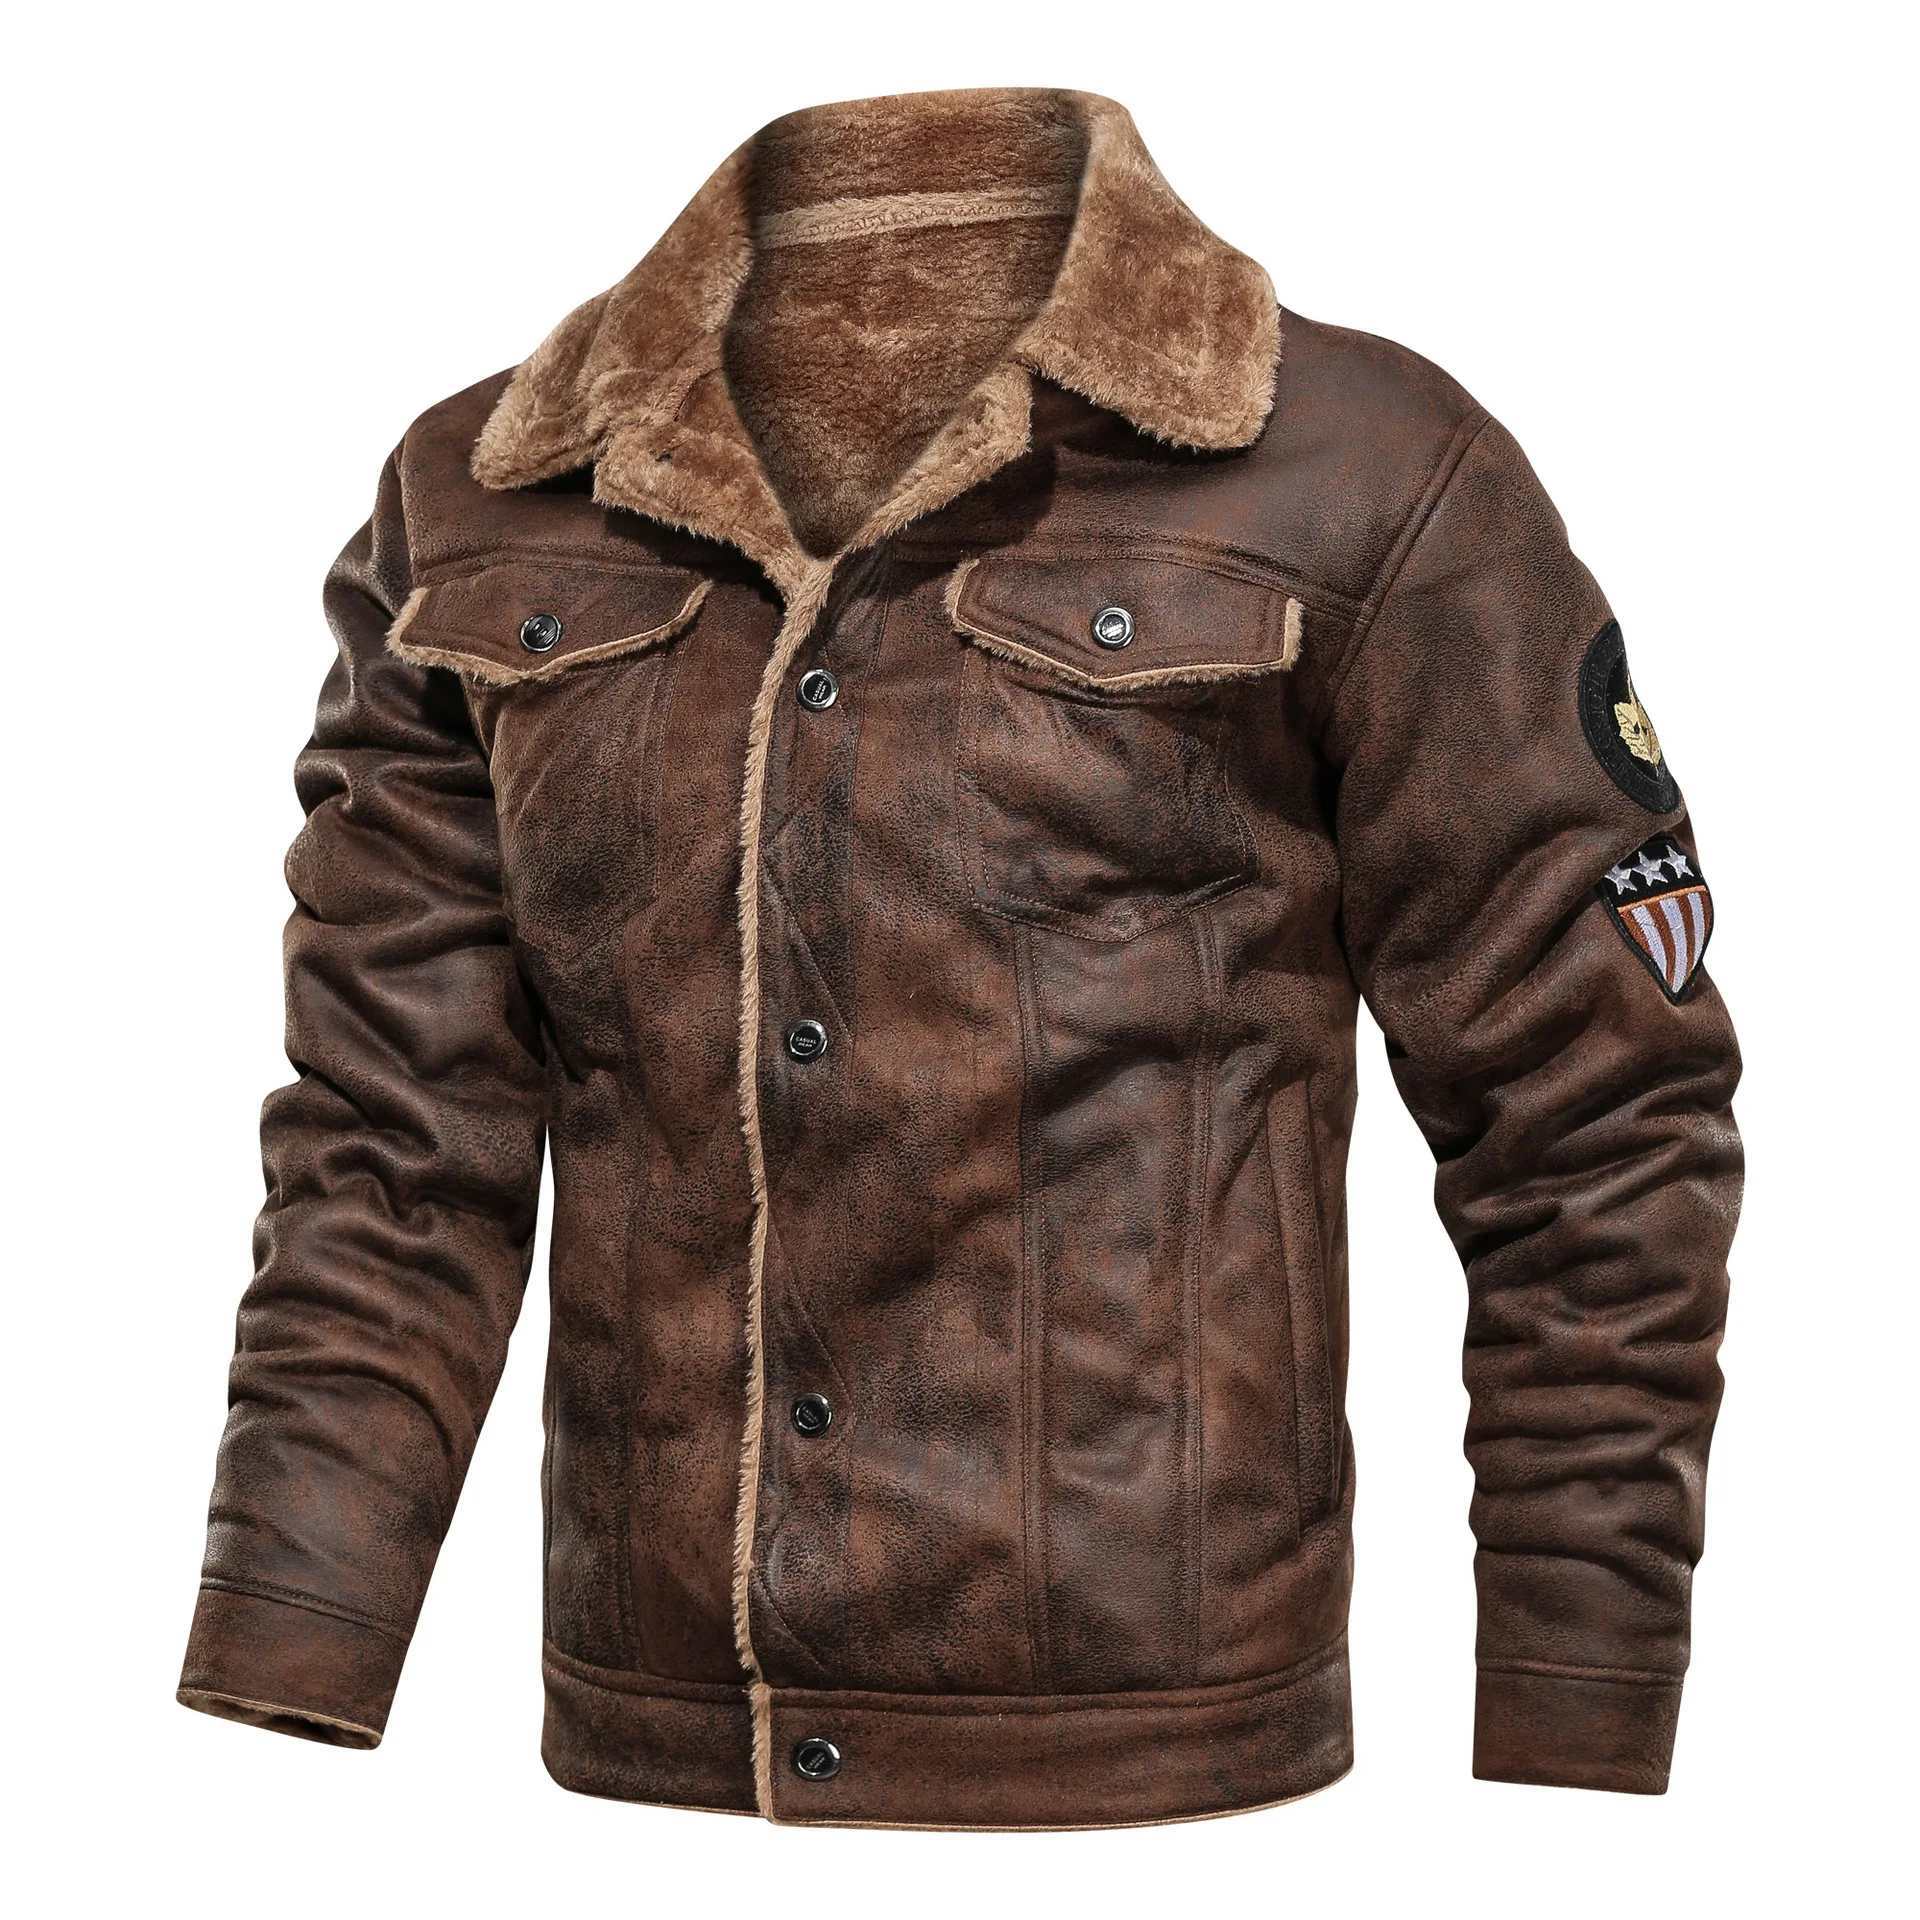 Мужская тактическая куртка-пилот, зимняя теплая куртка в стиле милитари, мужские куртки из плотного флиса, хлопка, шерсти, пальто с подкладкой, мотоциклетная парка